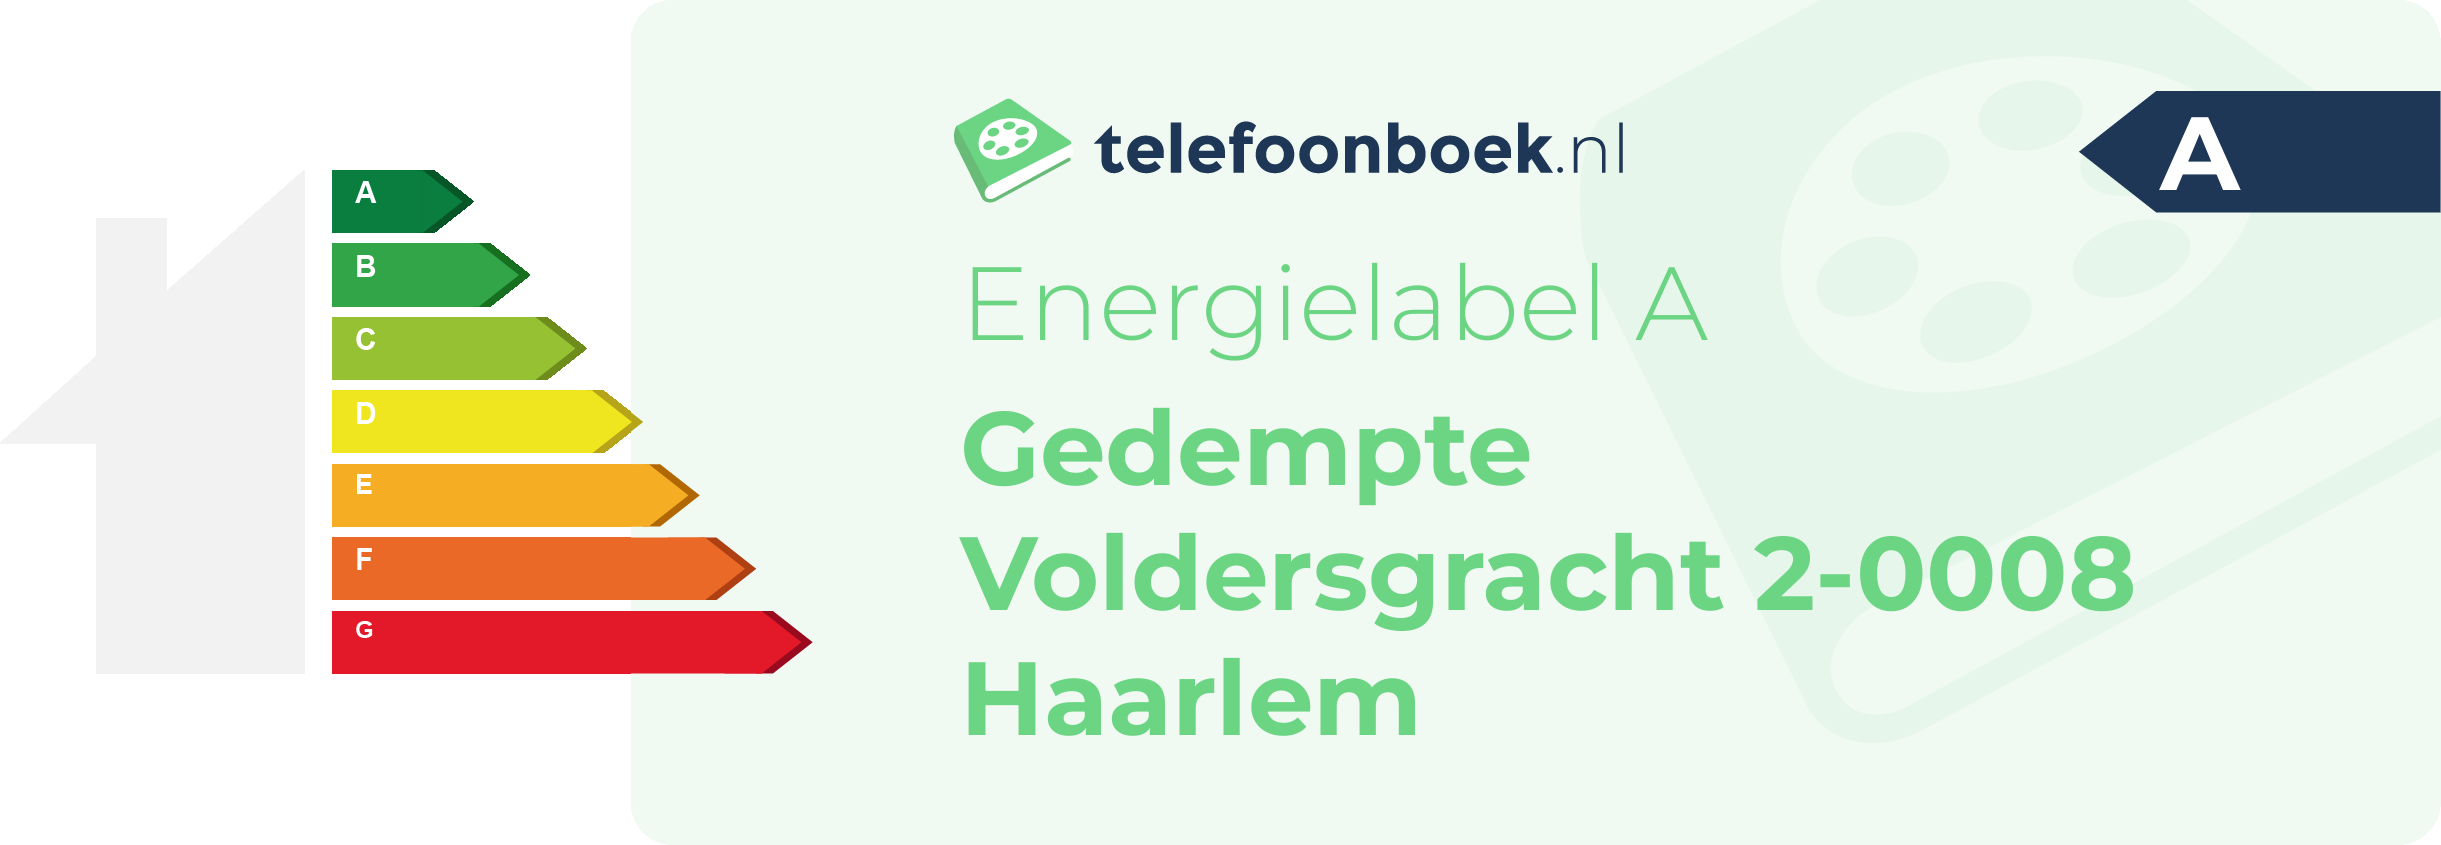 Energielabel Gedempte Voldersgracht 2-0008 Haarlem